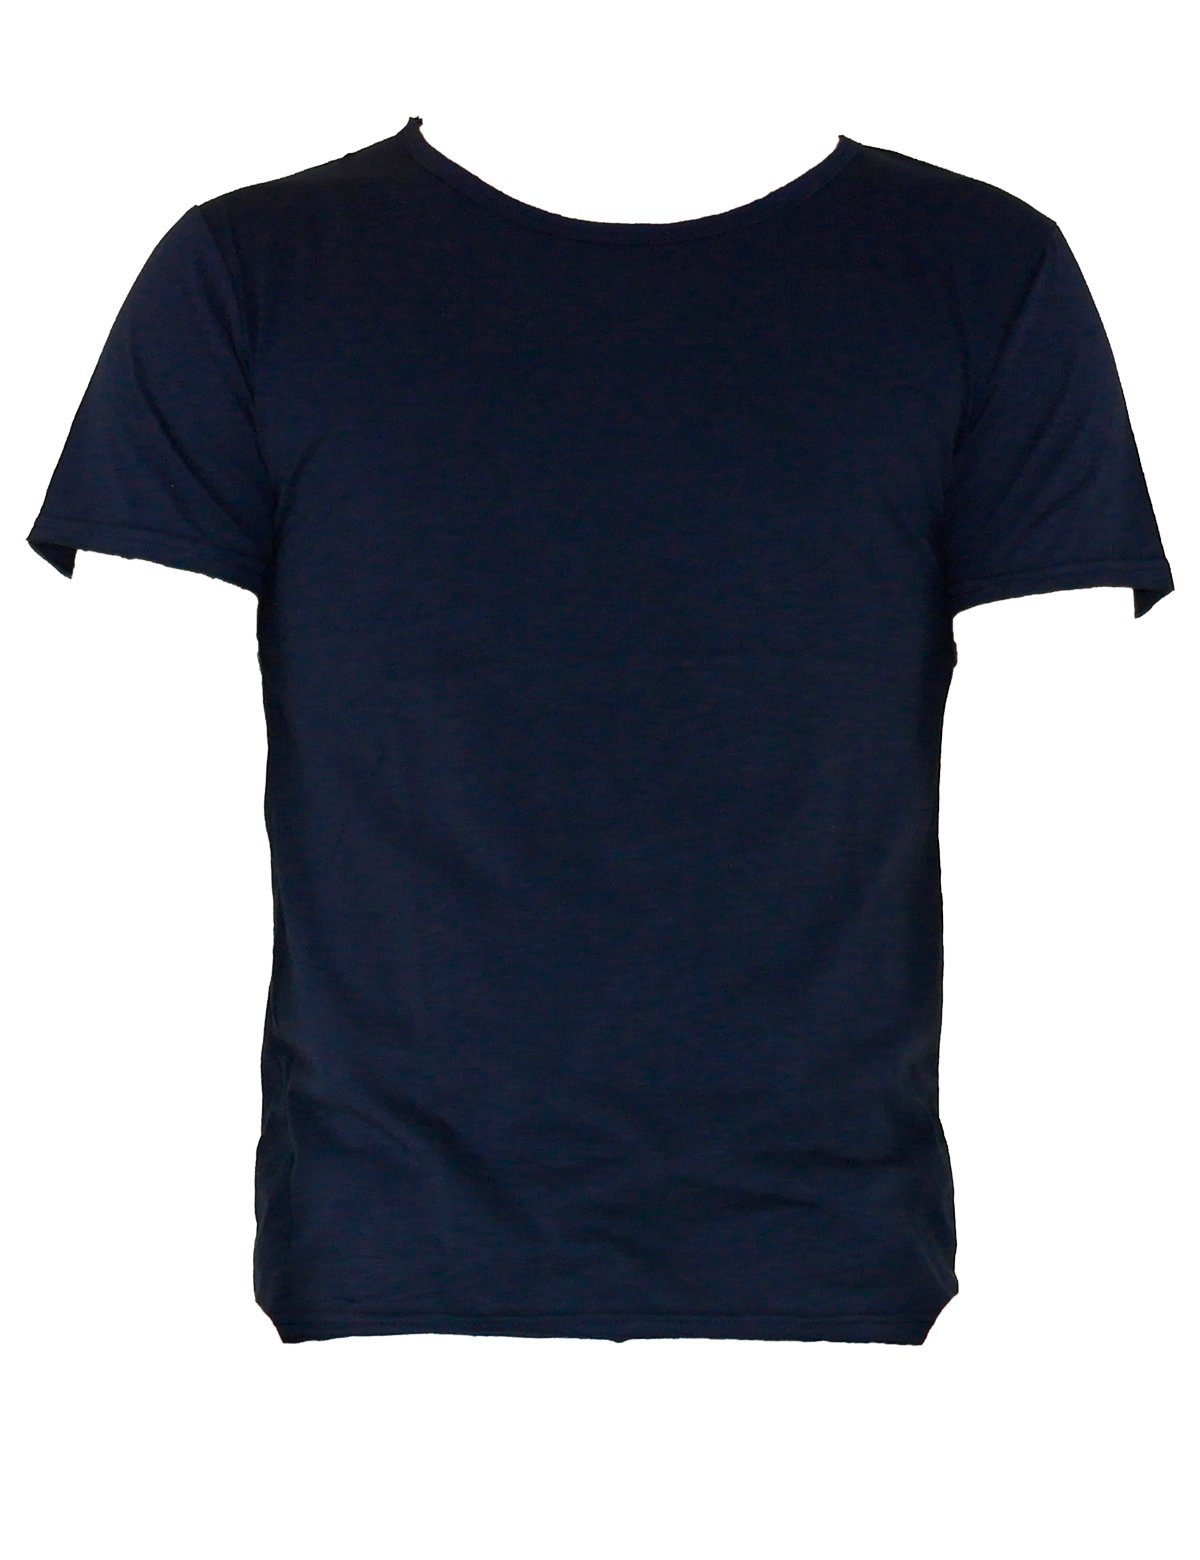 YESET T-Shirt Herren Shirt T-Shirt Poloshirt Tank Top Hemd Kurzarm Figurbetont 551 Dunkelblau | T-Shirts